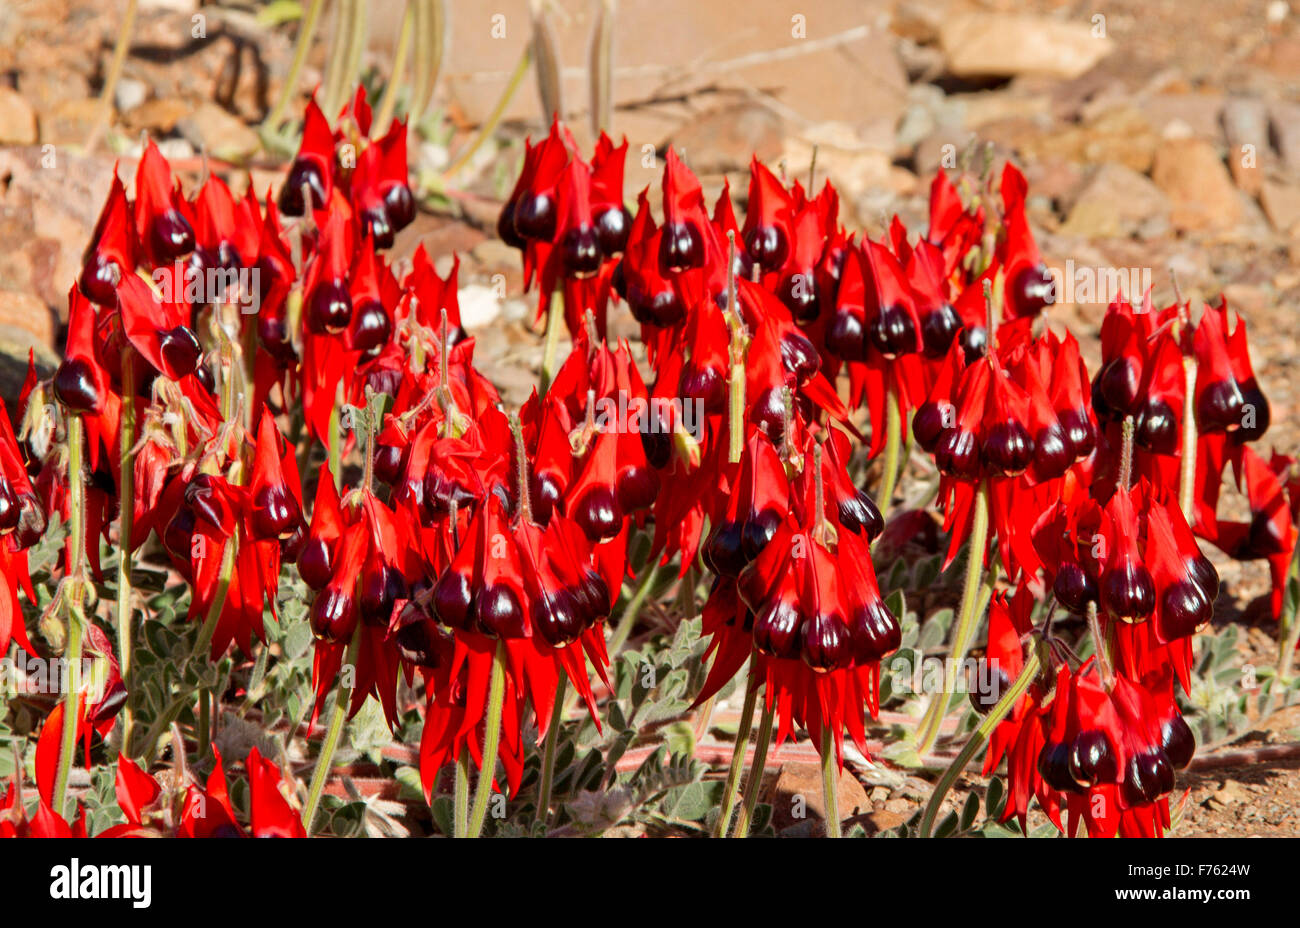 Masa de flores de vivos colores rojo Sturt's desert, guisante australiano Swainsona formosa, flores silvestres que crecen en Flinders Ranges en el outback SA Foto de stock